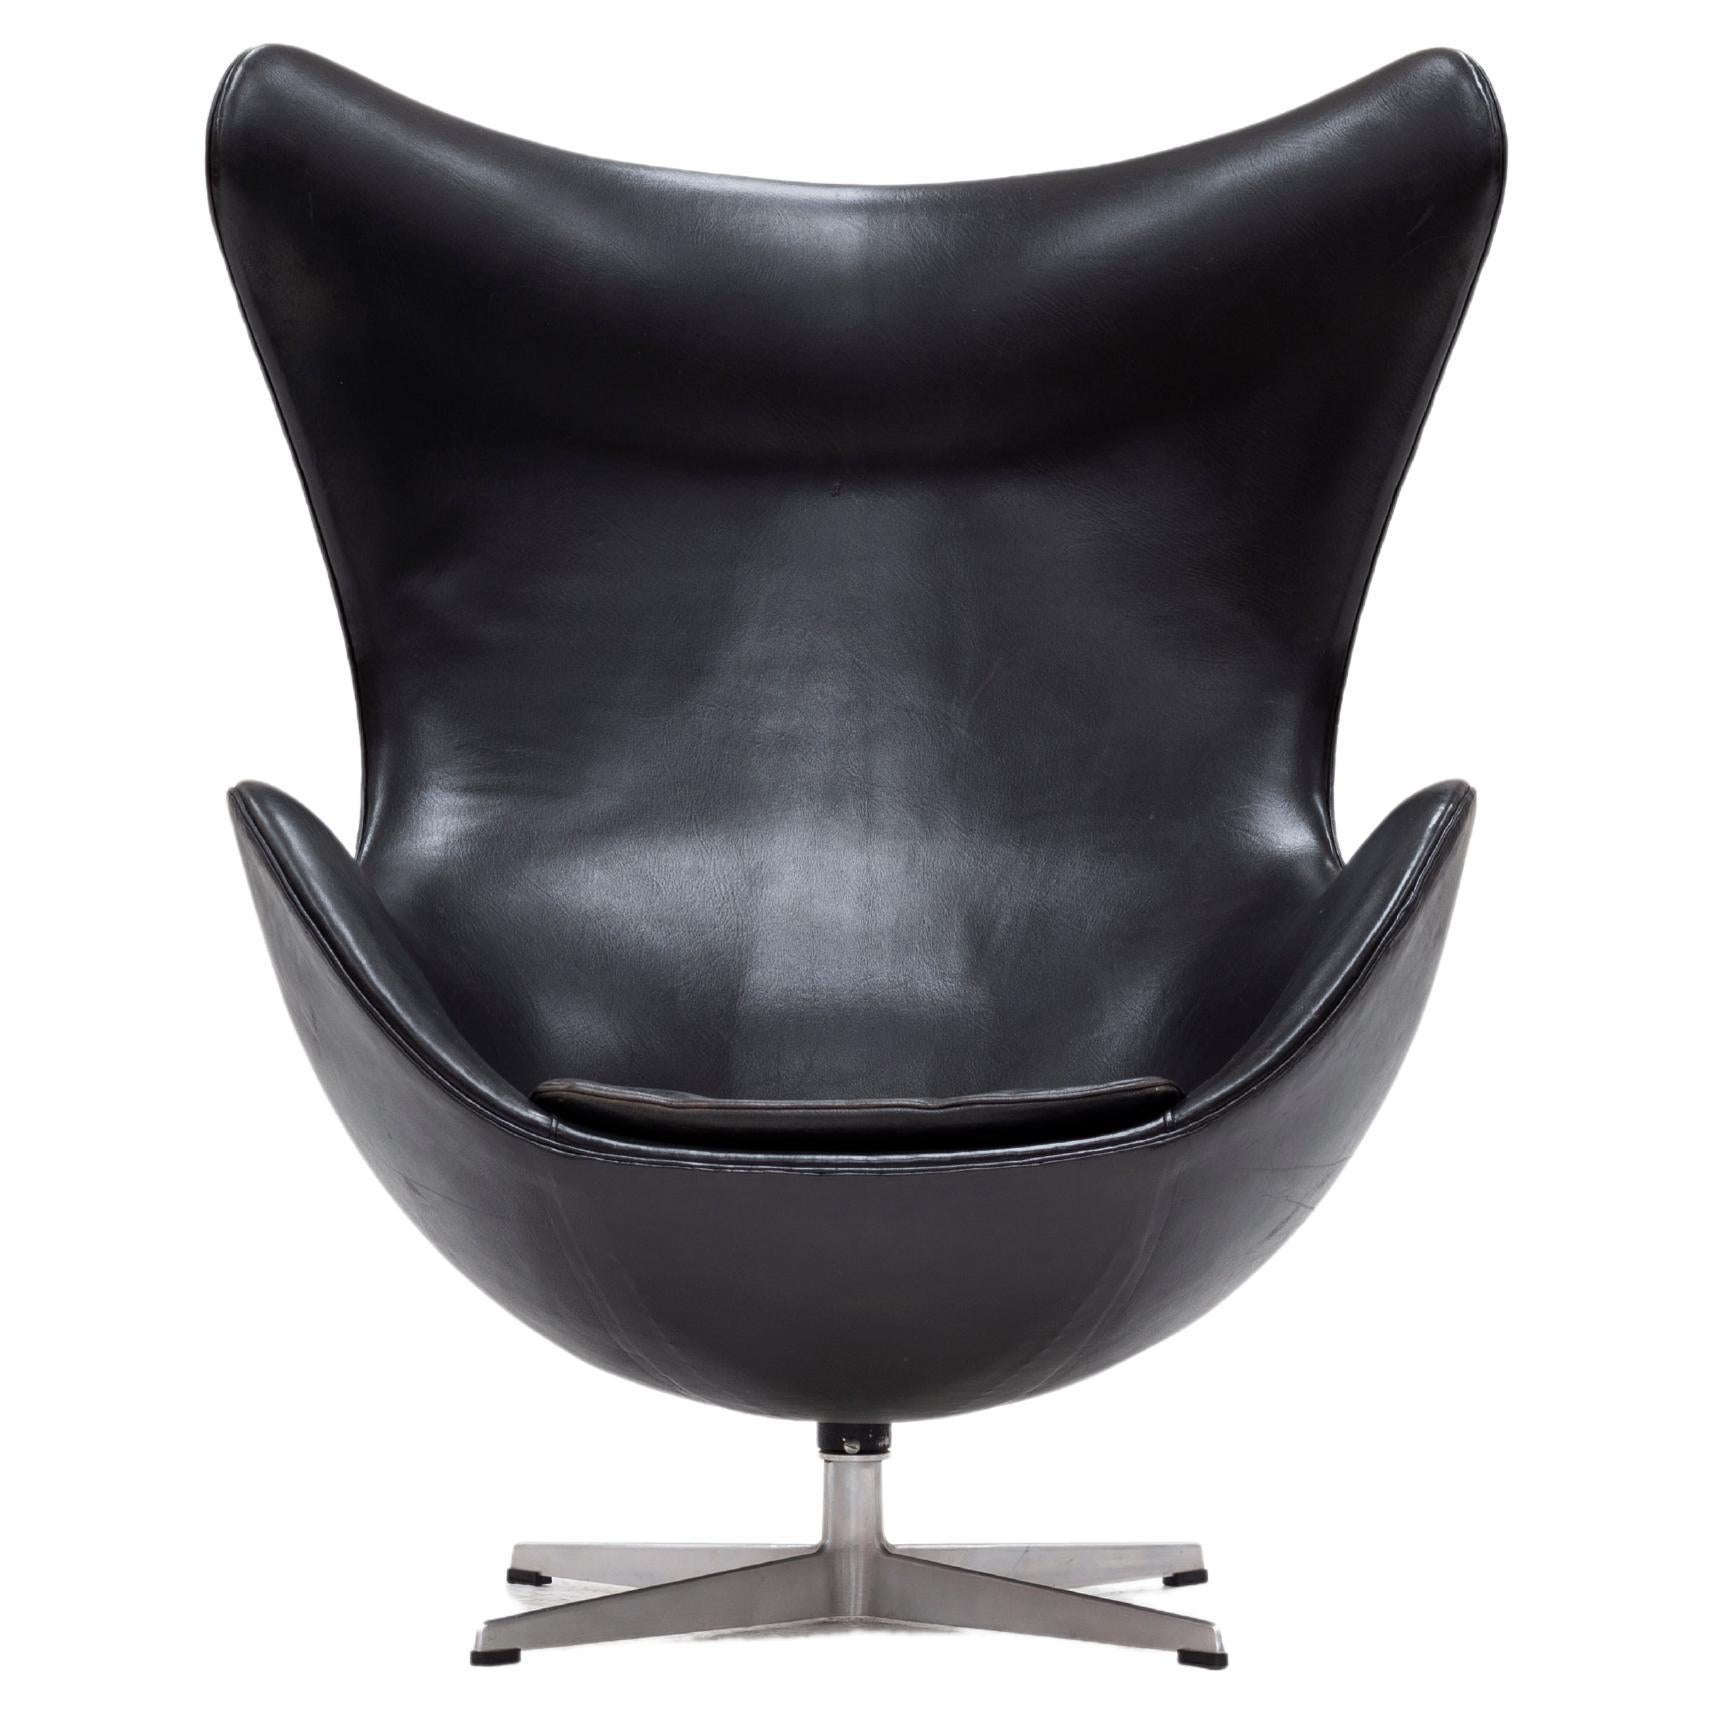 Arne Jacobsen Egg Chair in Black Leather, Denmark, 1960’s